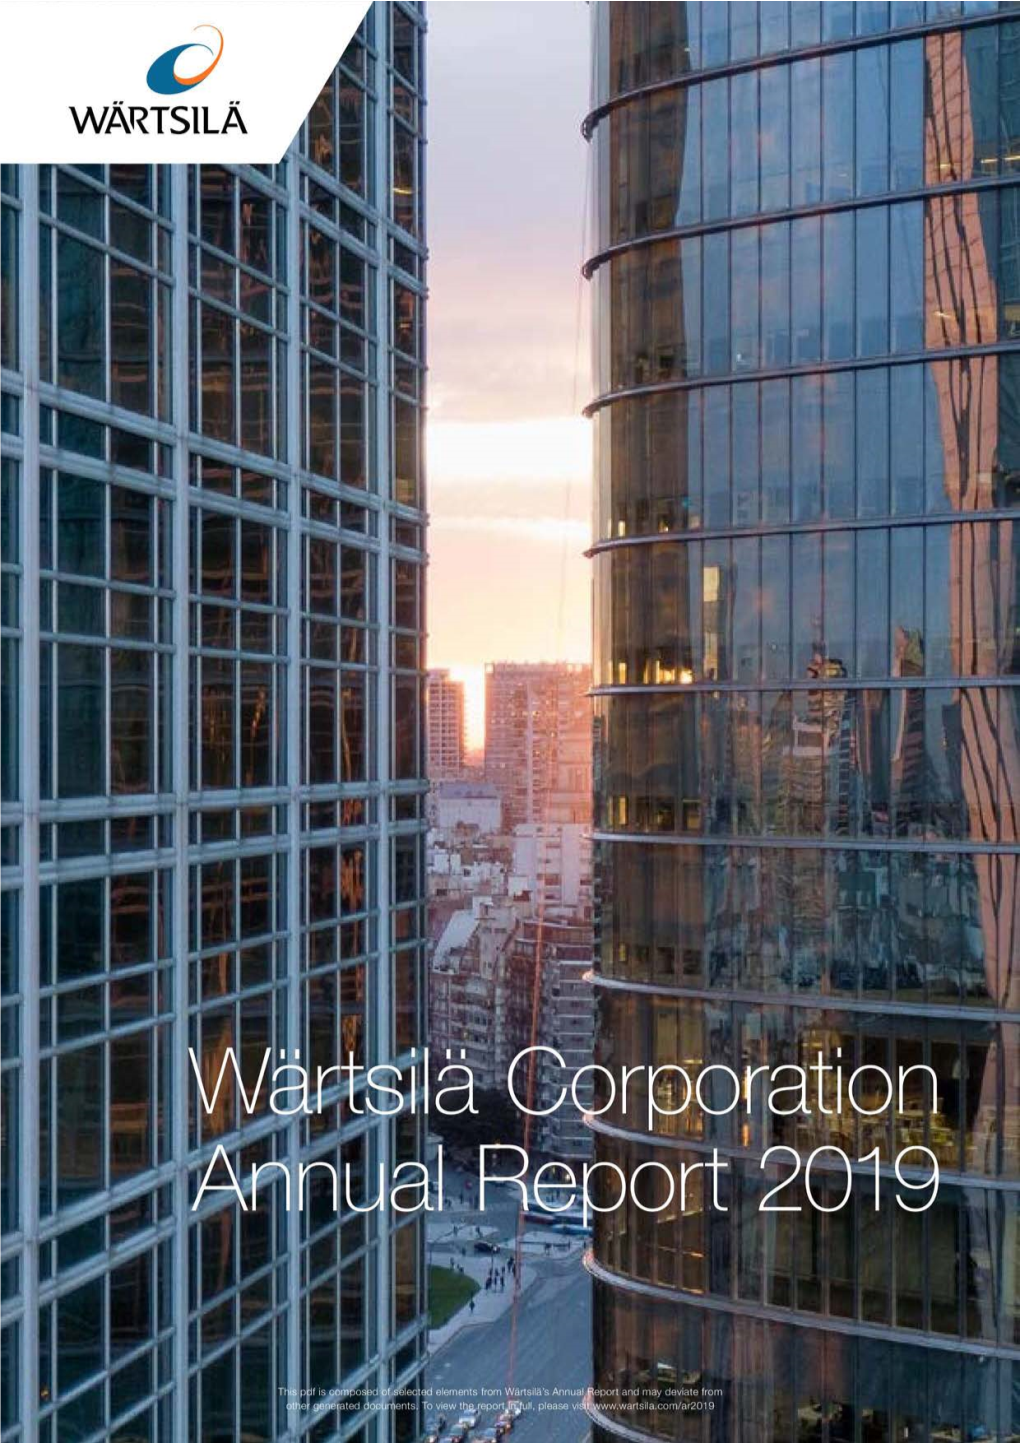 Wärtsilä Corporation Annual Report 2019